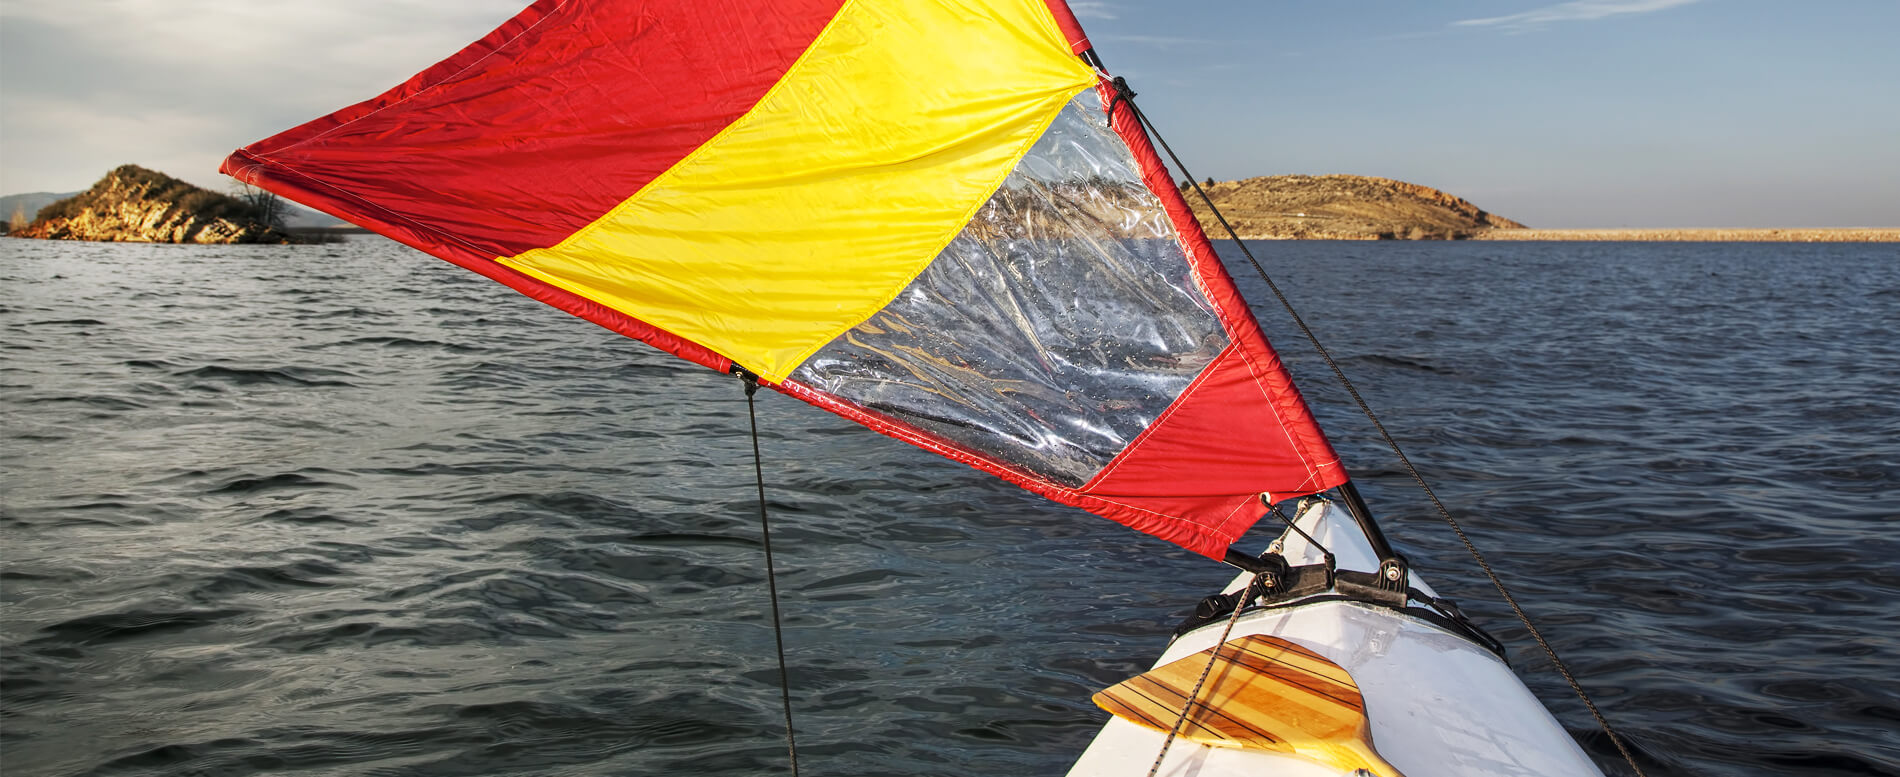 Red and yellow kayak sail